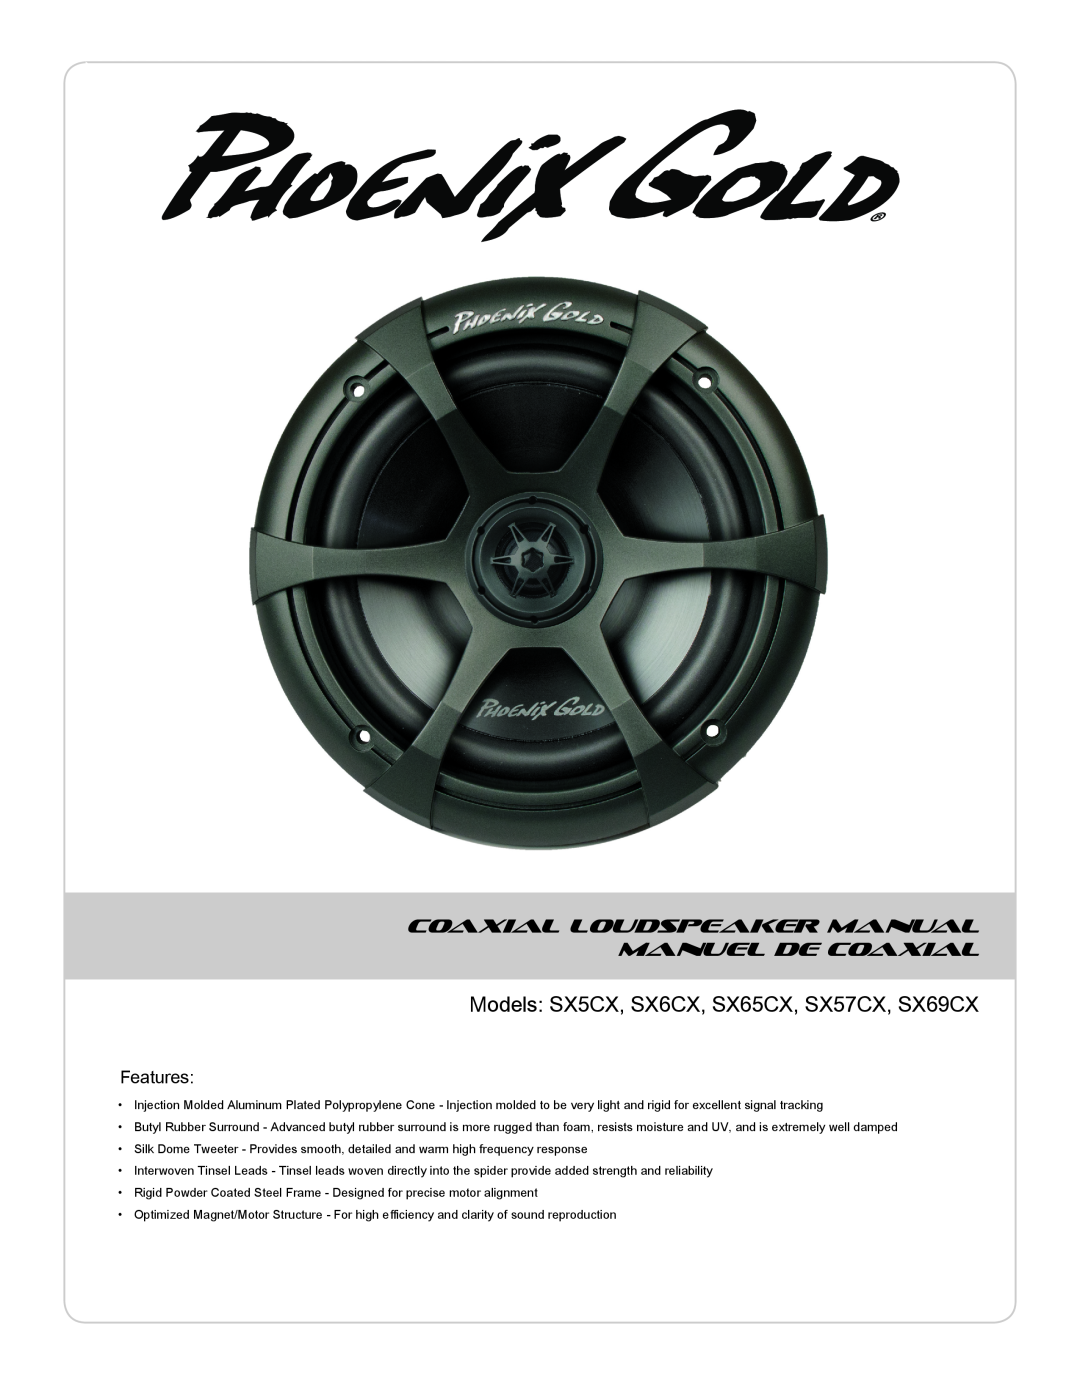 Phoenix Gold manual Models SX5CX, SX6CX, SX65CX, SX57CX, SX69CX, Coaxial Loudspeaker Manual Manuel De Coaxial, Features 